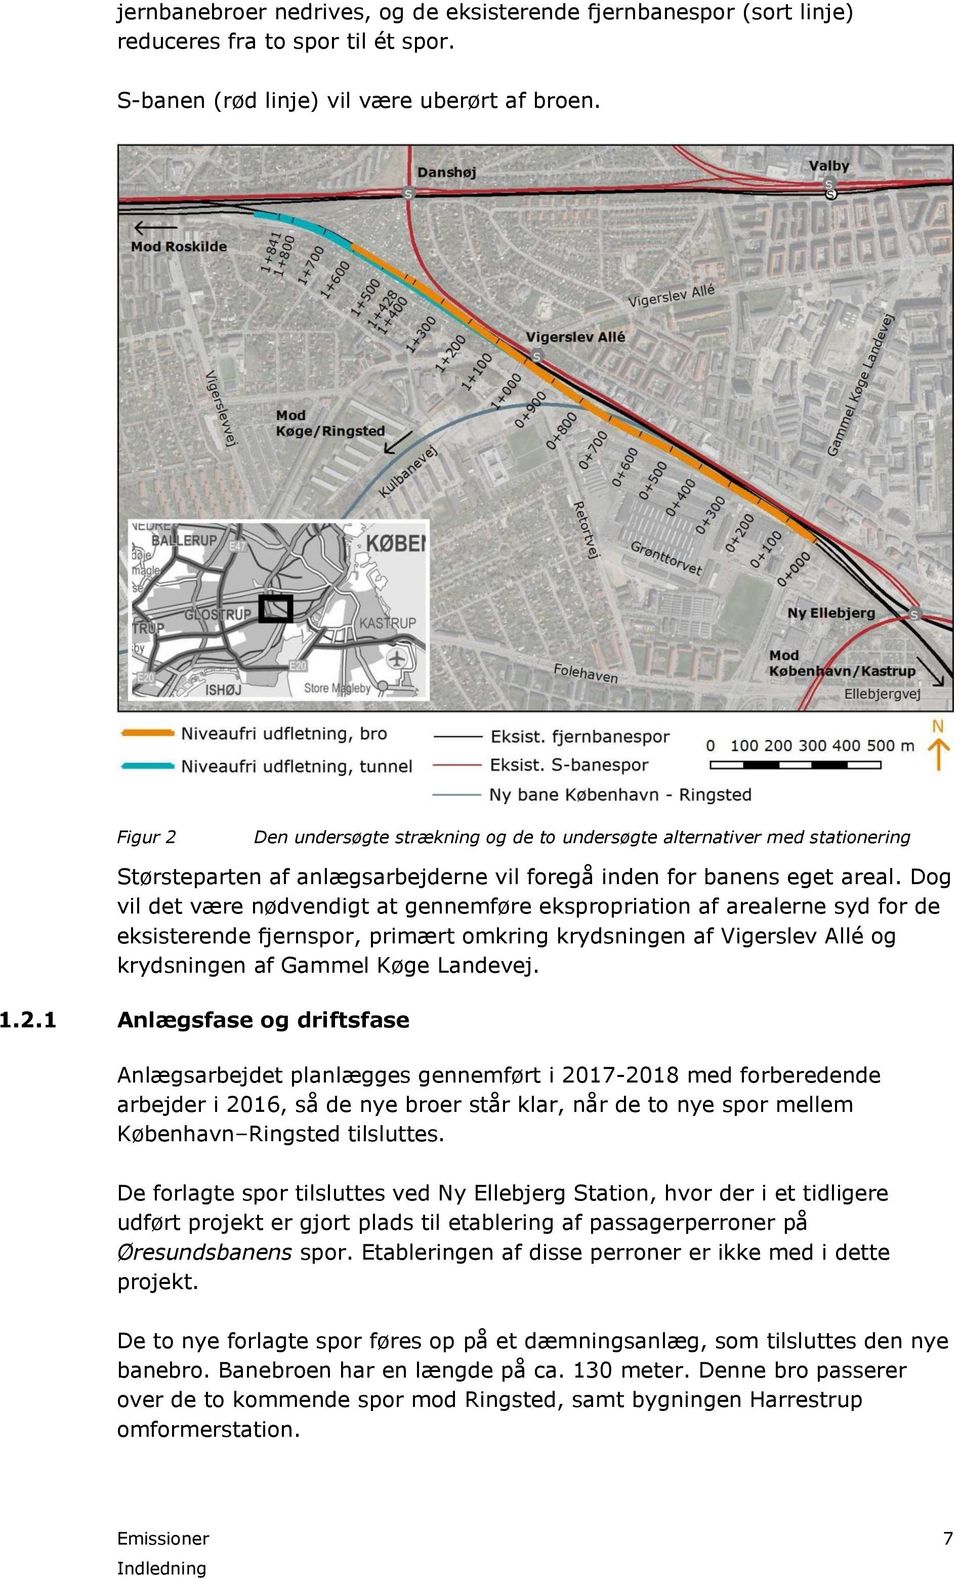 Dog vil det være nødvendigt at gennemføre ekspropriation af arealerne syd for de eksisterende fjernspor, primært omkring krydsningen af Vigerslev Allé og krydsningen af Gammel Køge Landevej. 1.2.